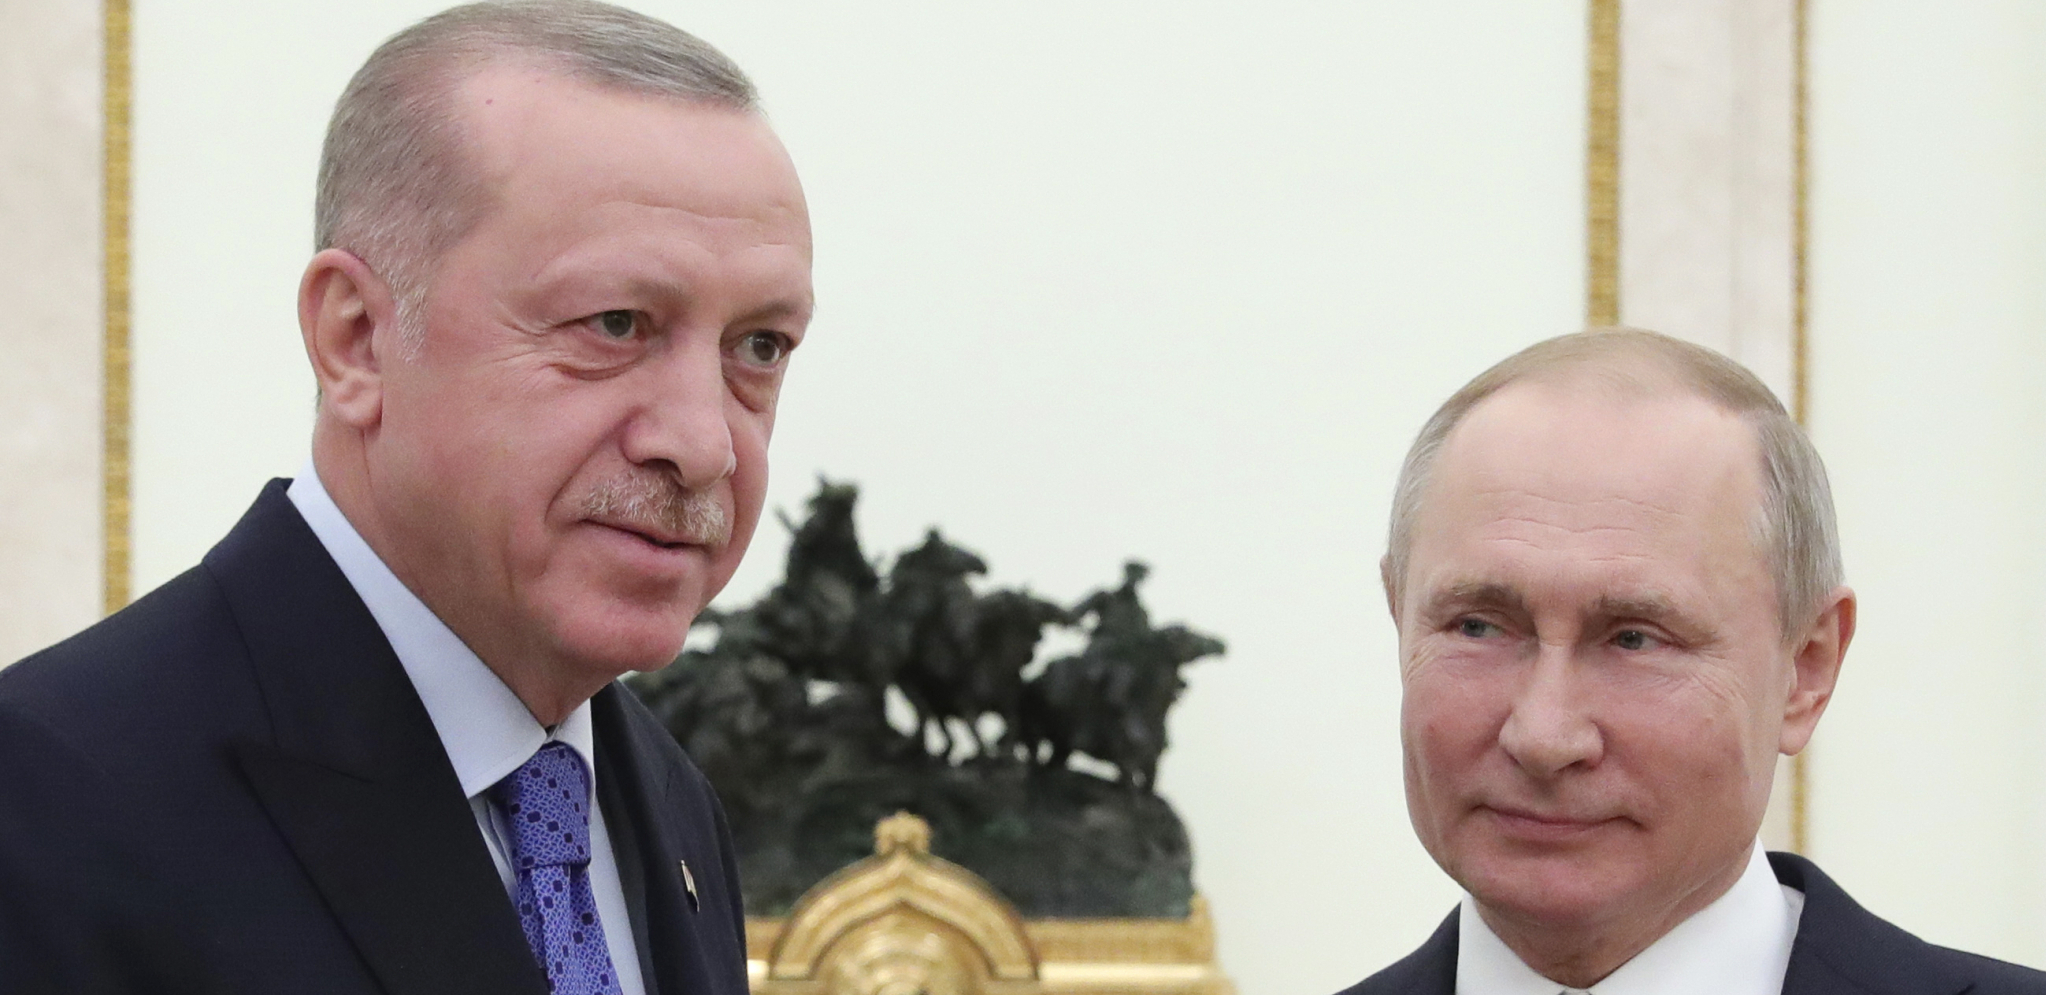 POSETA ERDOGANA MOSKVI KLJUČNA ZA SPORAZUM Turska nastavlja posredničku ulogu između Ukrajine i Rusije